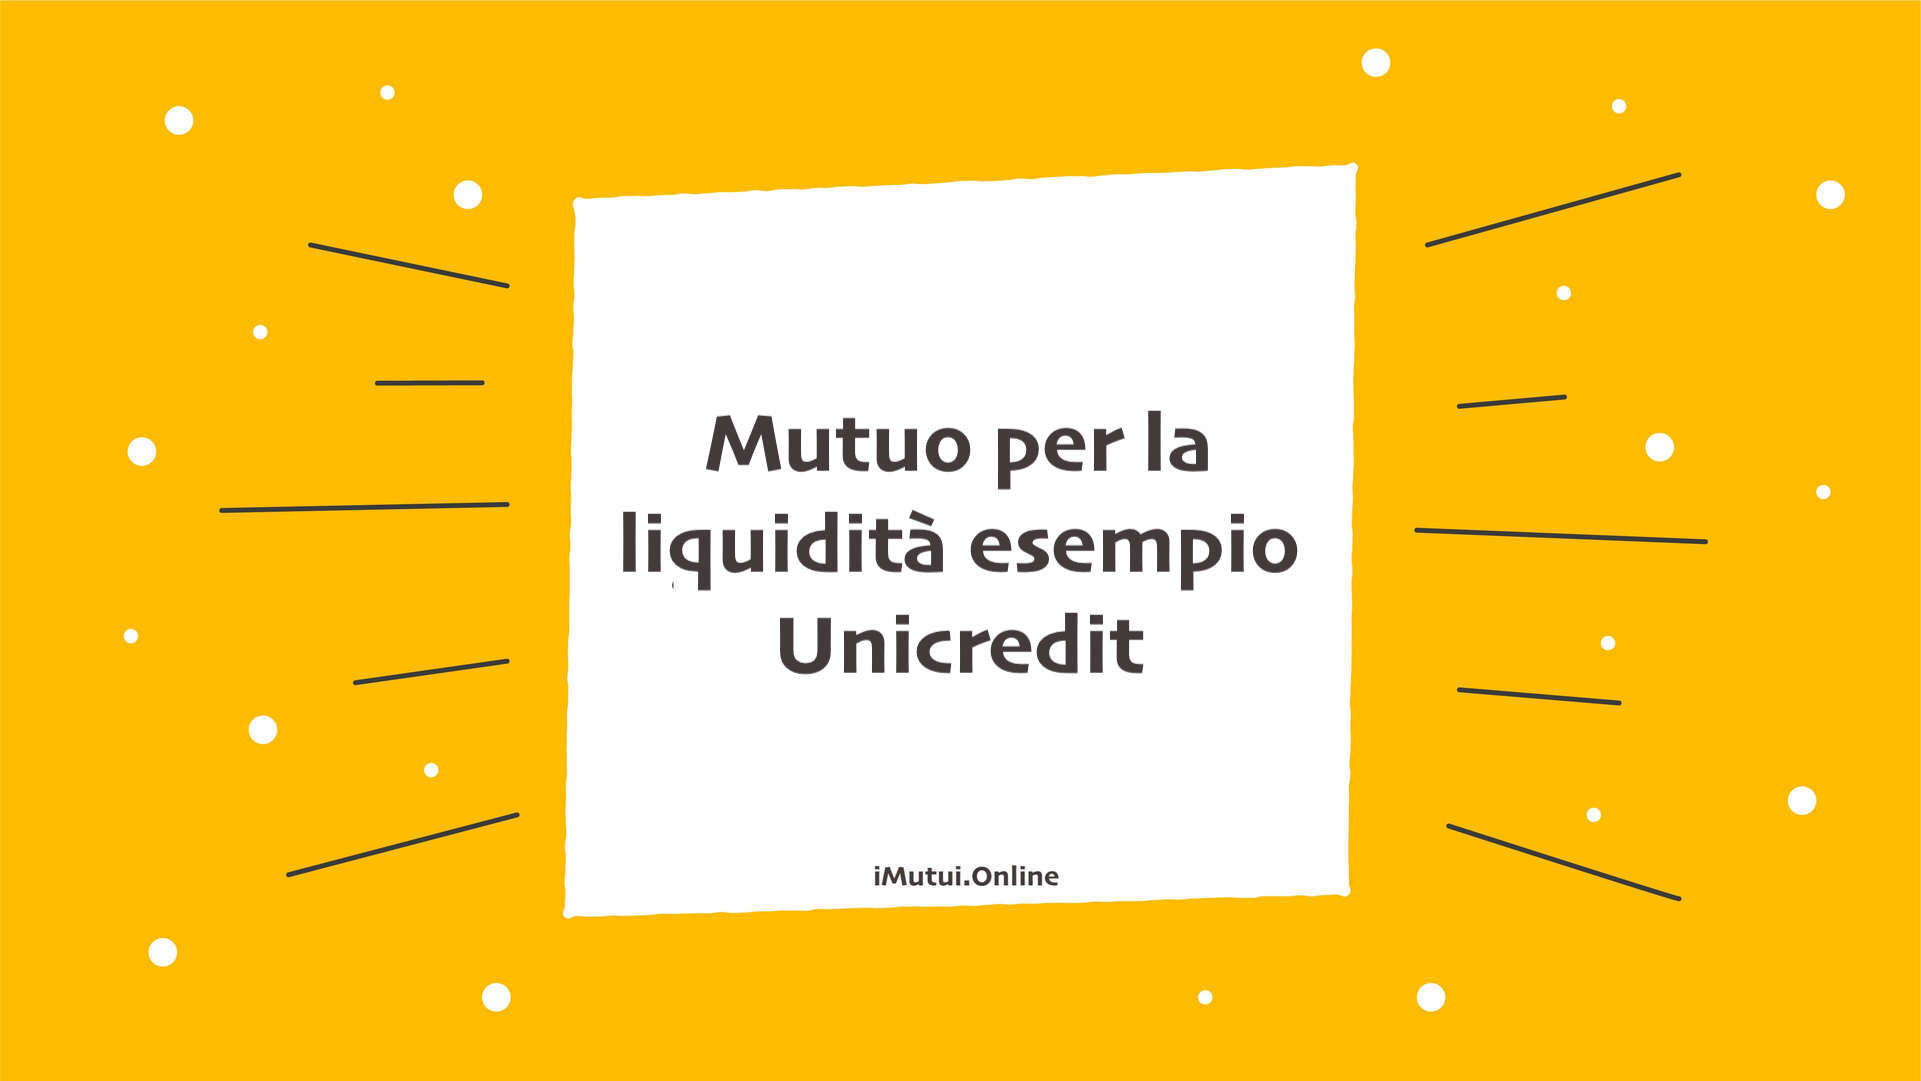 Mutuo per la liquidità esempio Unicredit